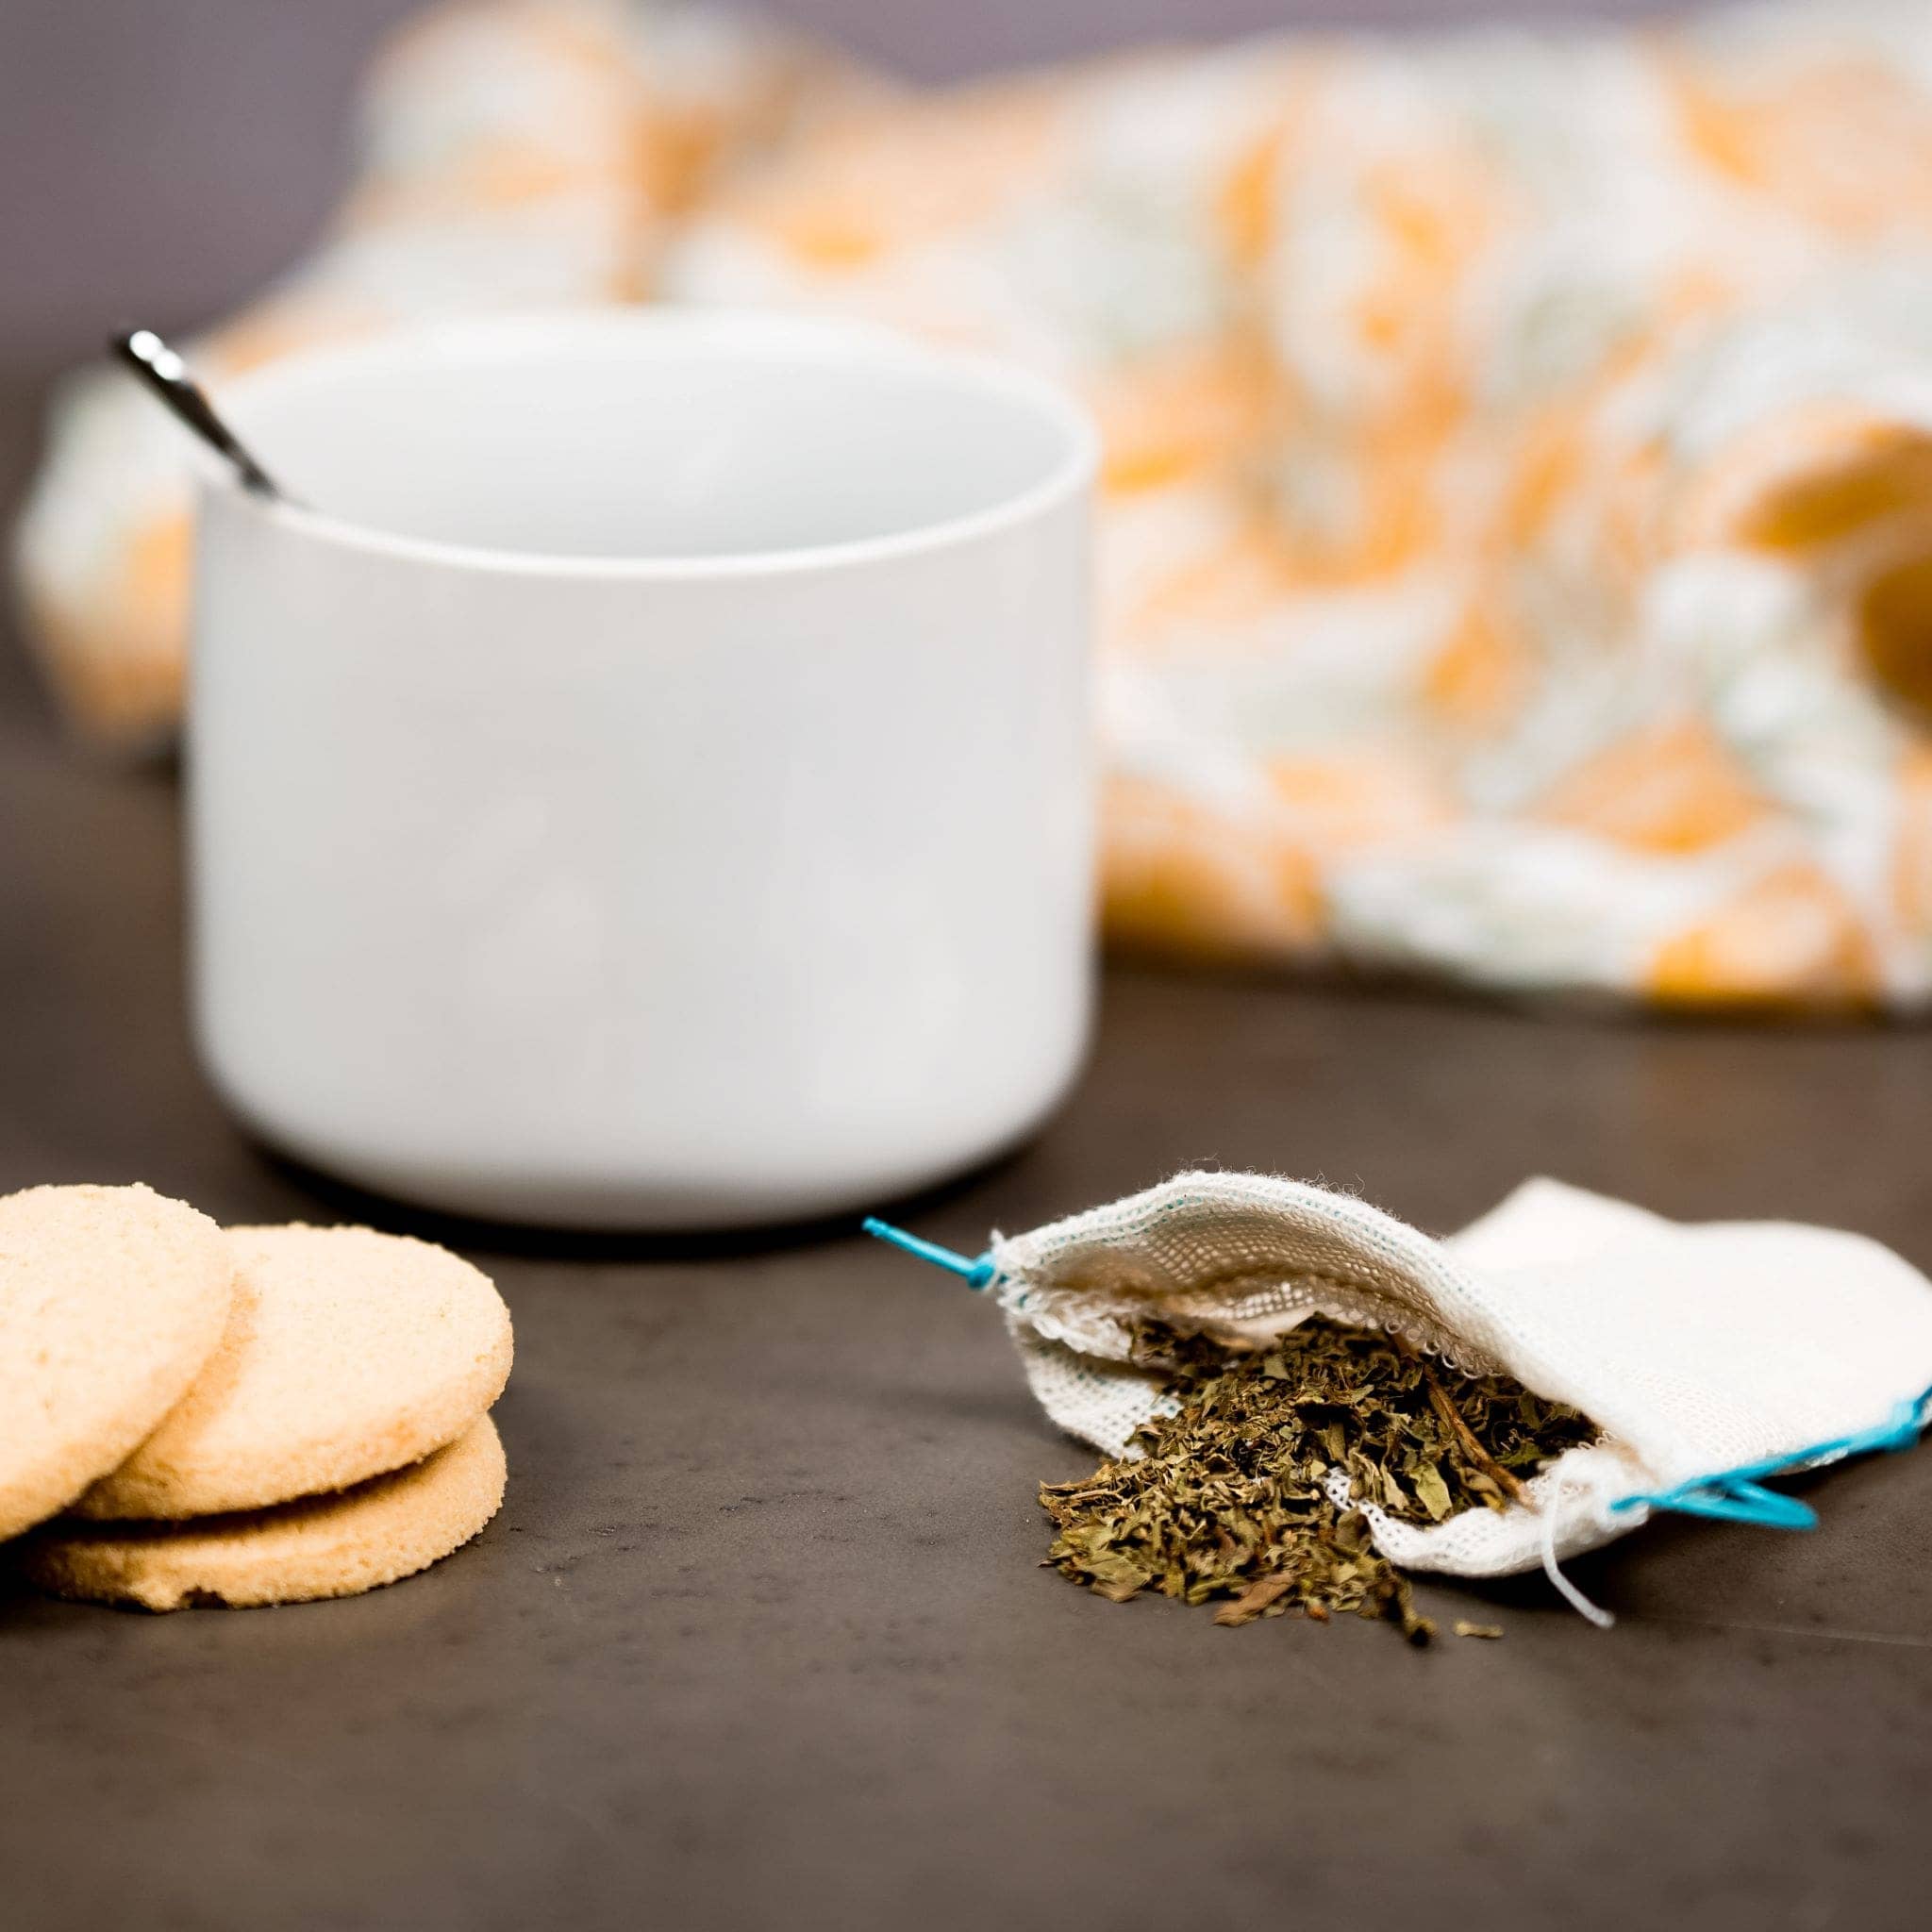 Sachet de thé lavable & réutilisable en tissu - Solide !